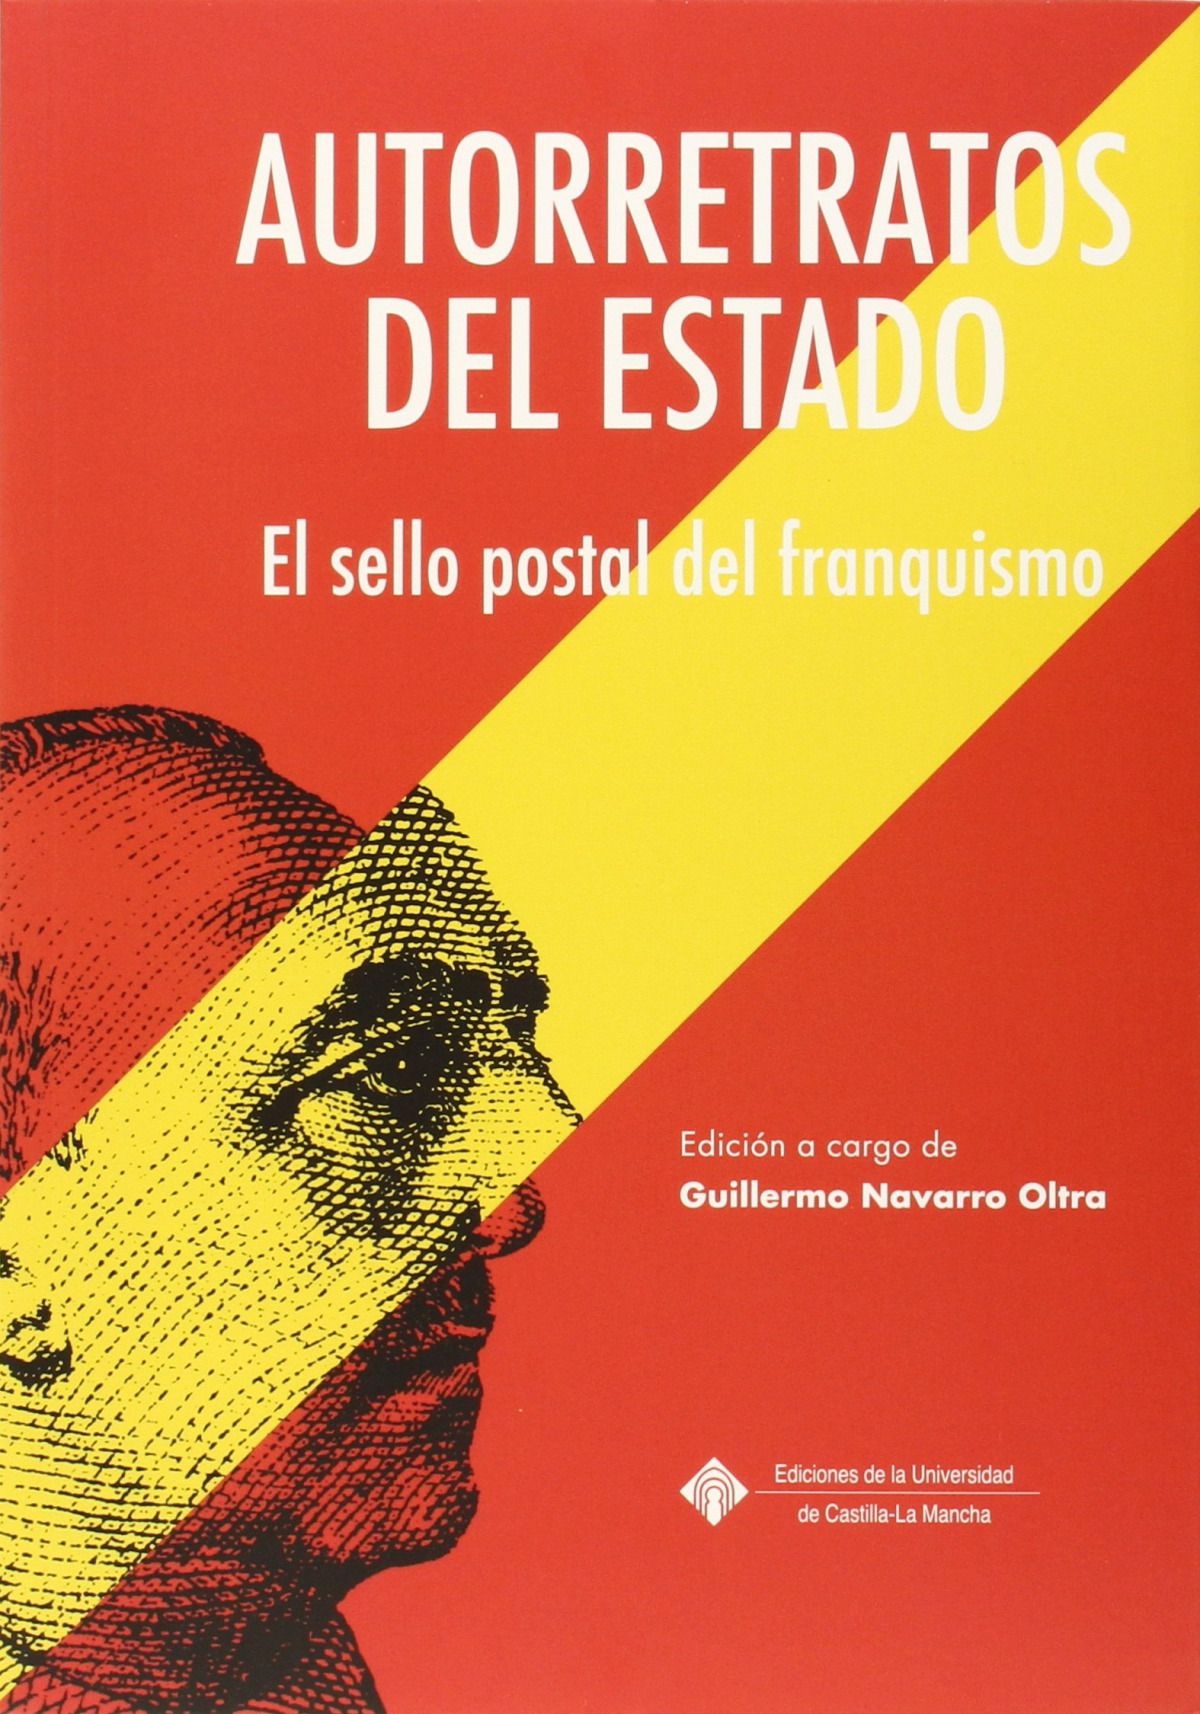 Autorretratos del estado : el sello postal del franquismo - Guillermo Navarro Oltra (coord.)